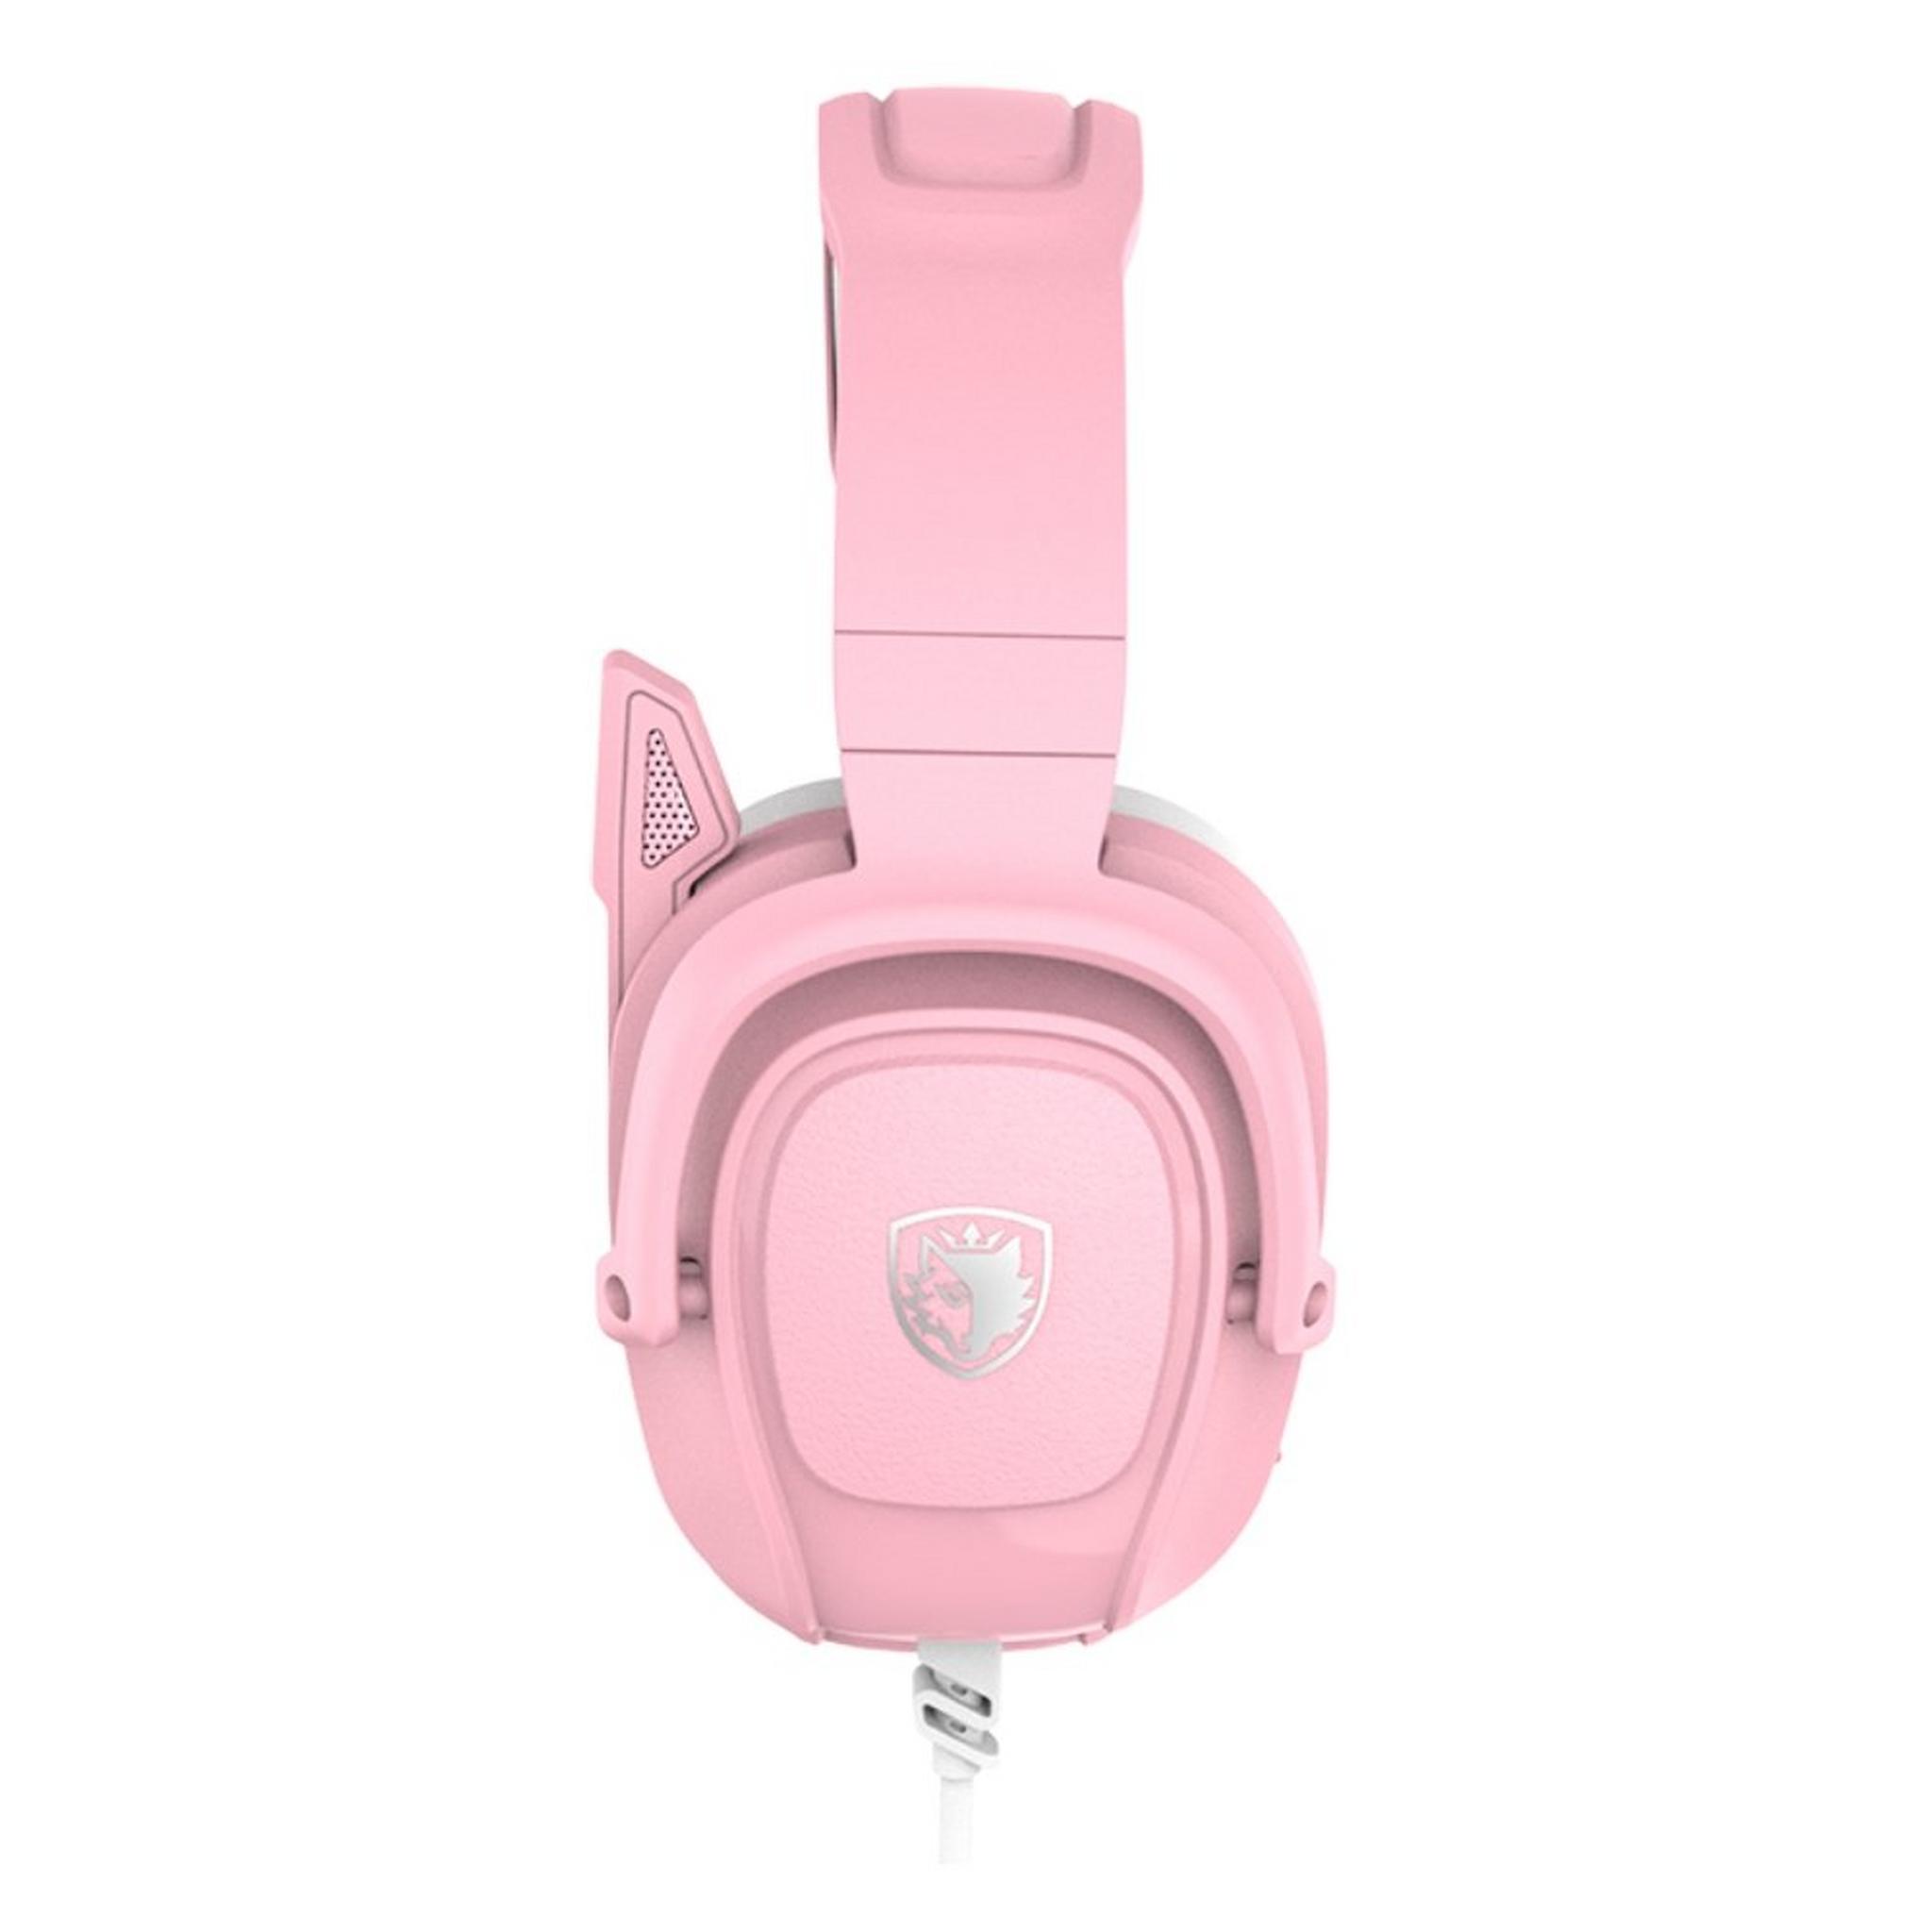 Sades Zpower Gaming Headset - Pink